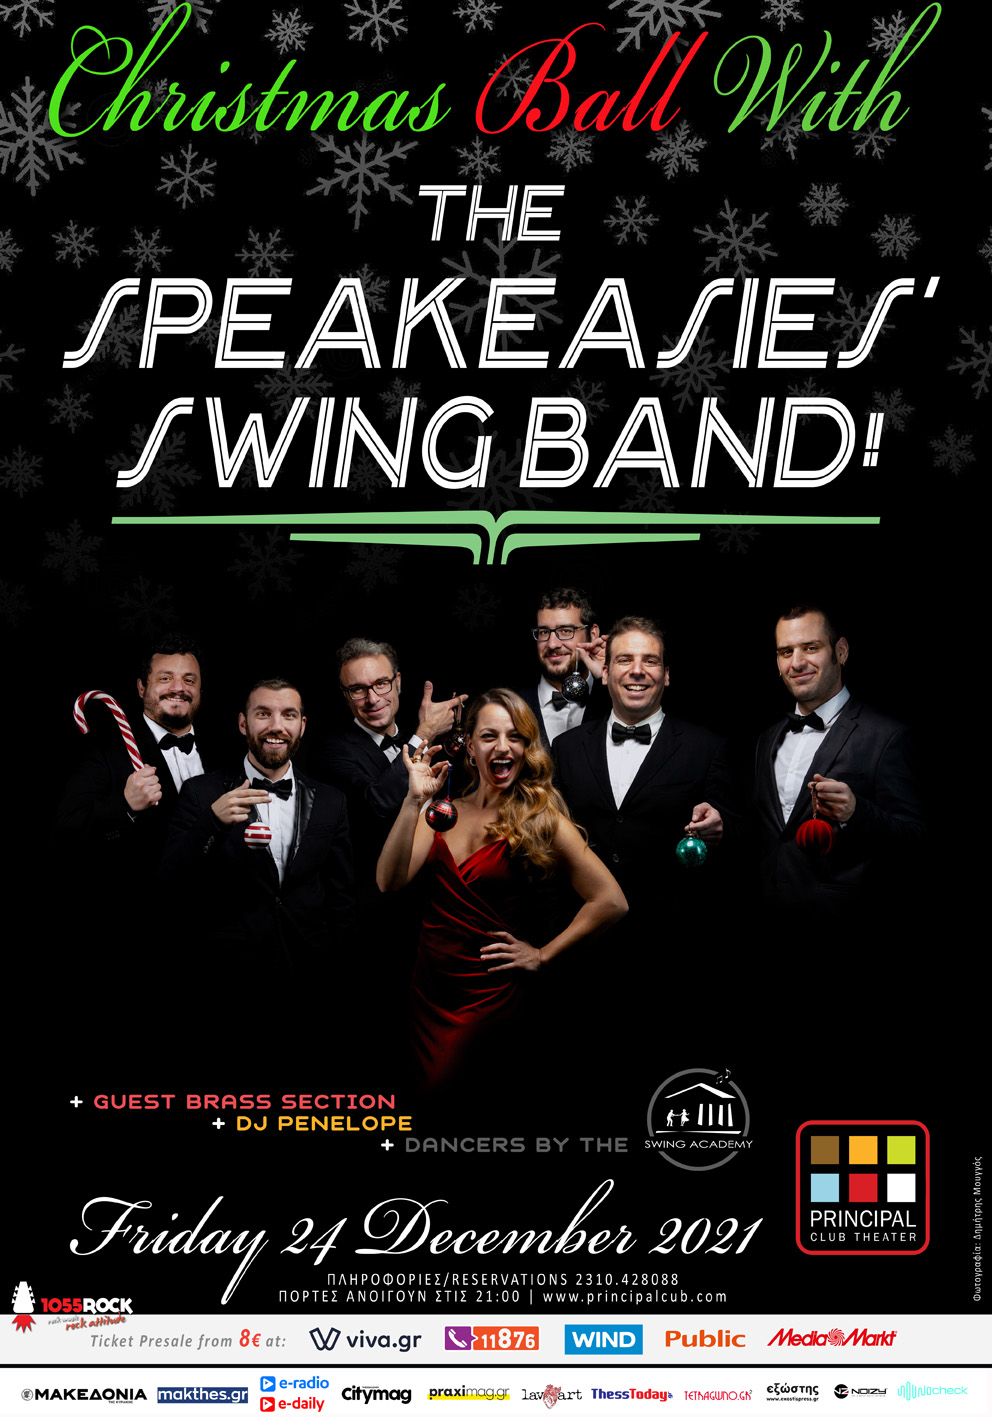 The Speakeasies' Swing Band